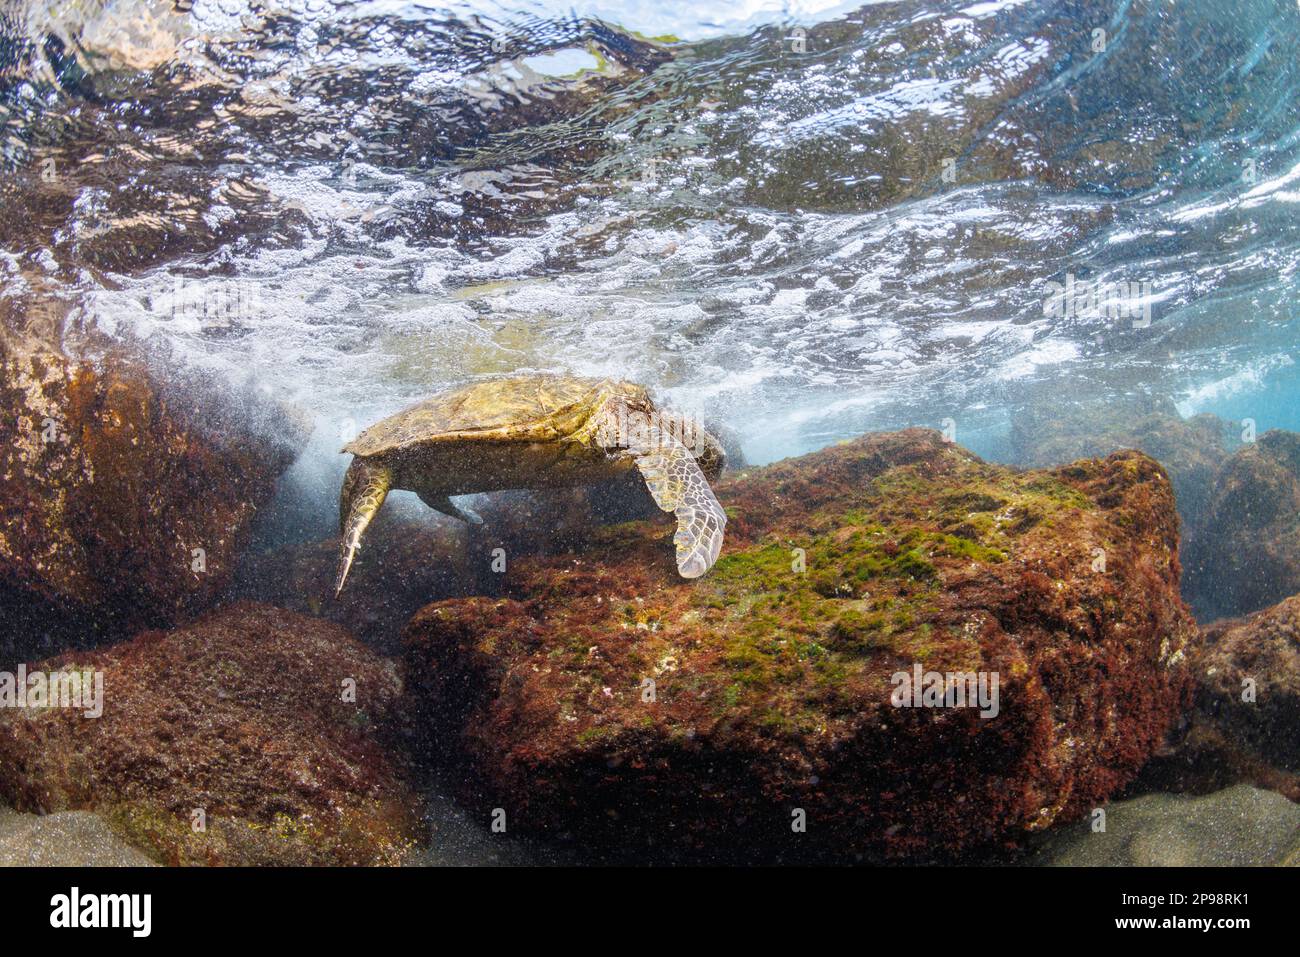 Con la sua conchiglia fuori dall'acqua nelle conchiglie una tartaruga di mare verde, Chelonia mydas, una specie in via di estinzione, si nutre di alghe al largo di West Maui, Hawaii che io Foto Stock